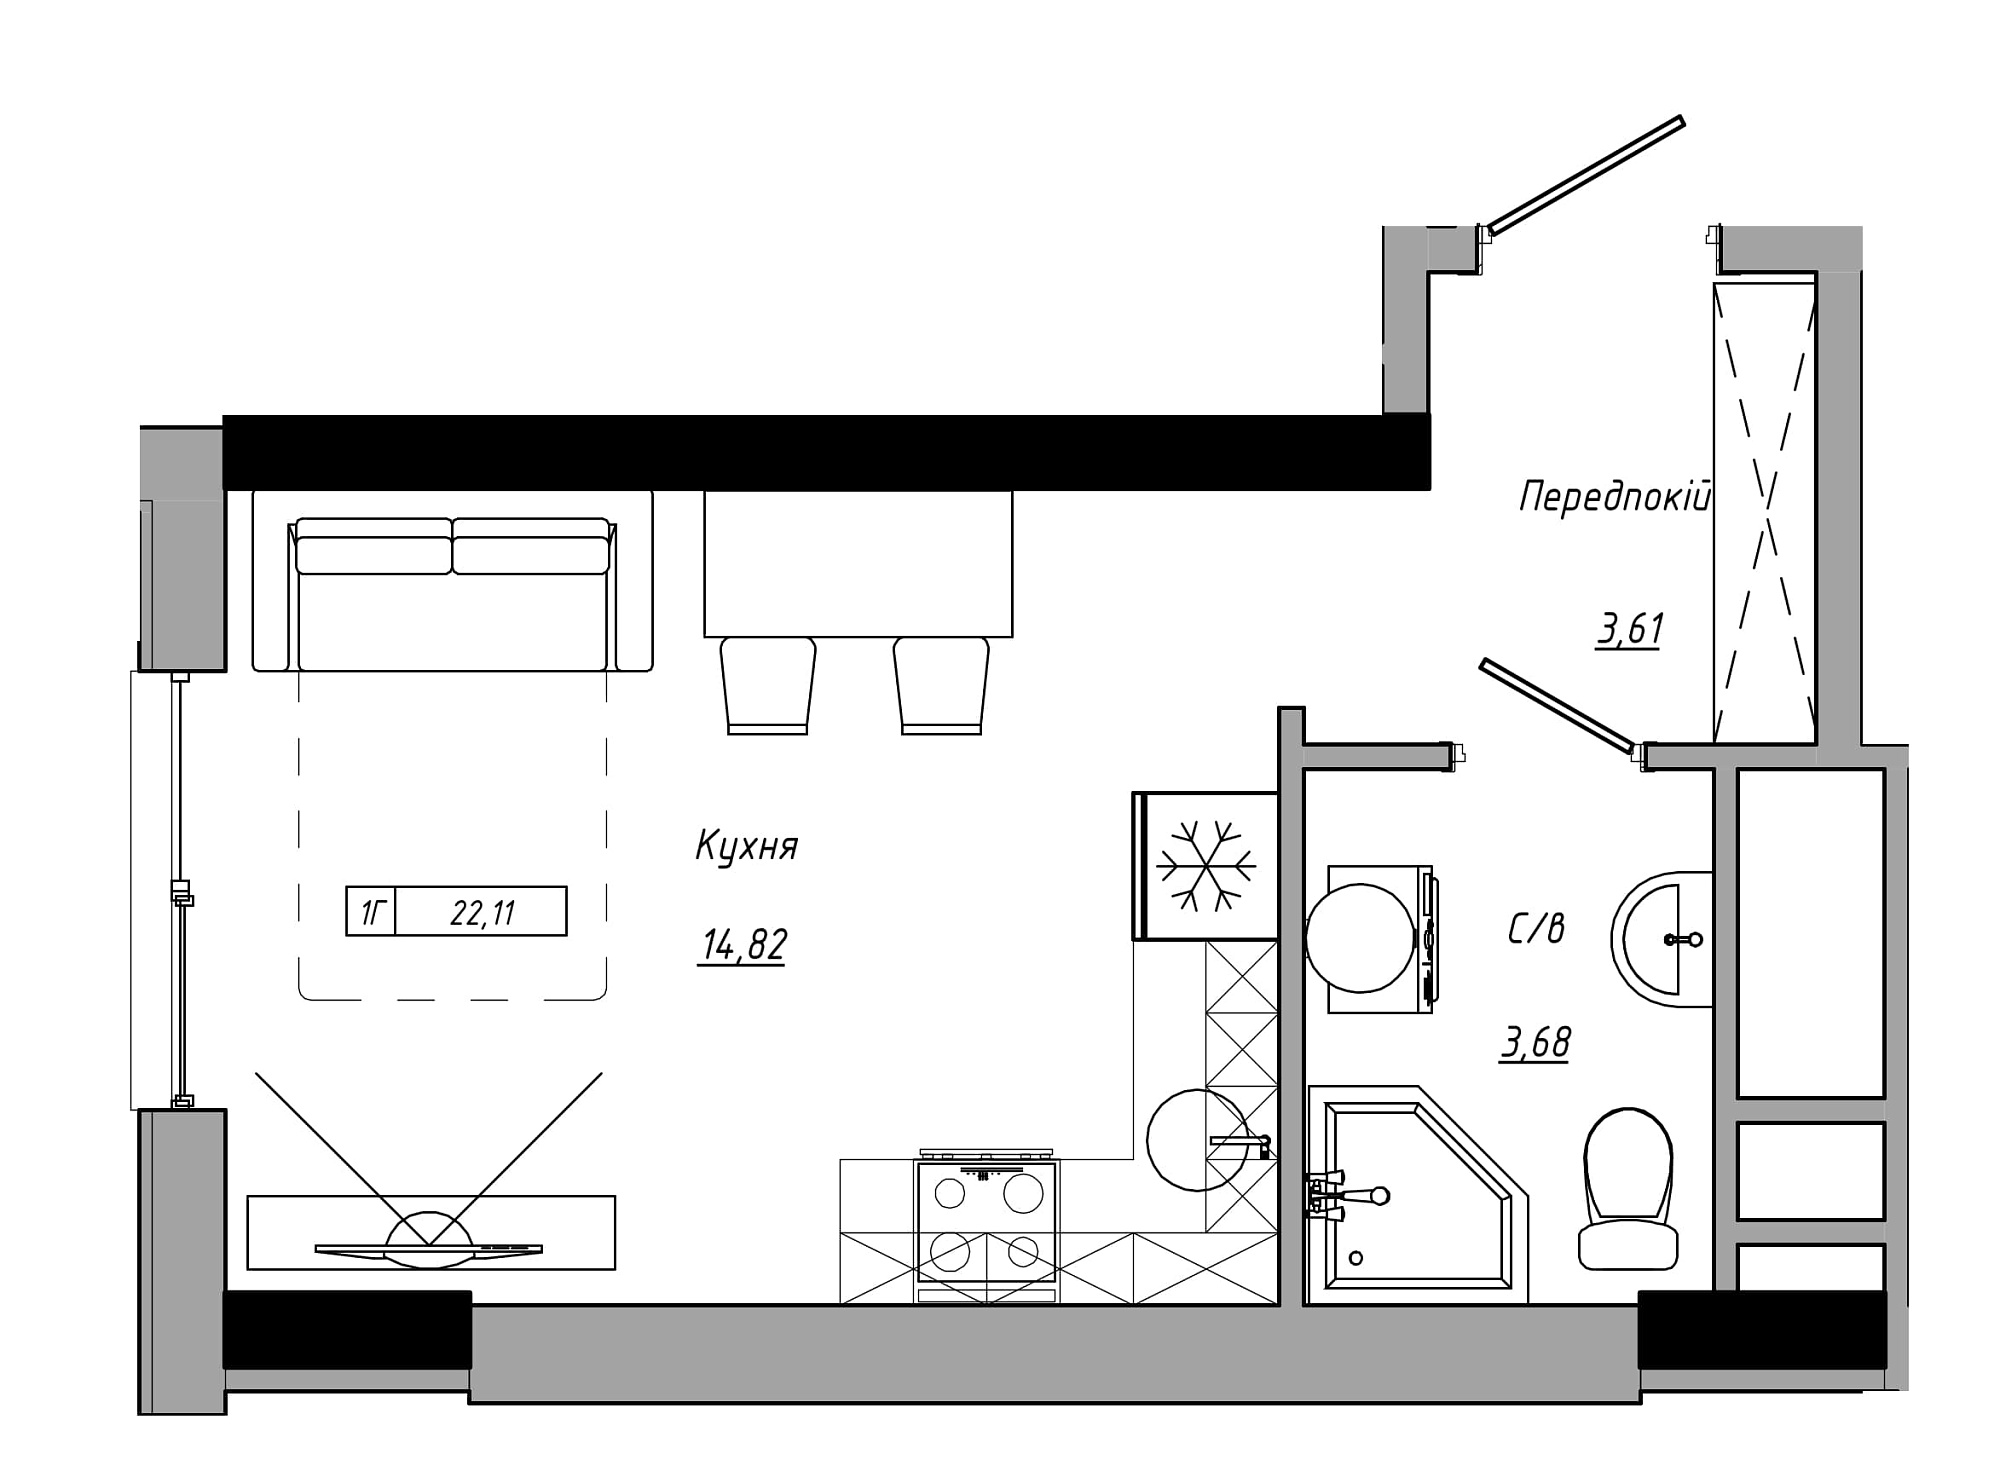 Планування Smart-квартира площею 22.11м2, AB-21-13/00105.